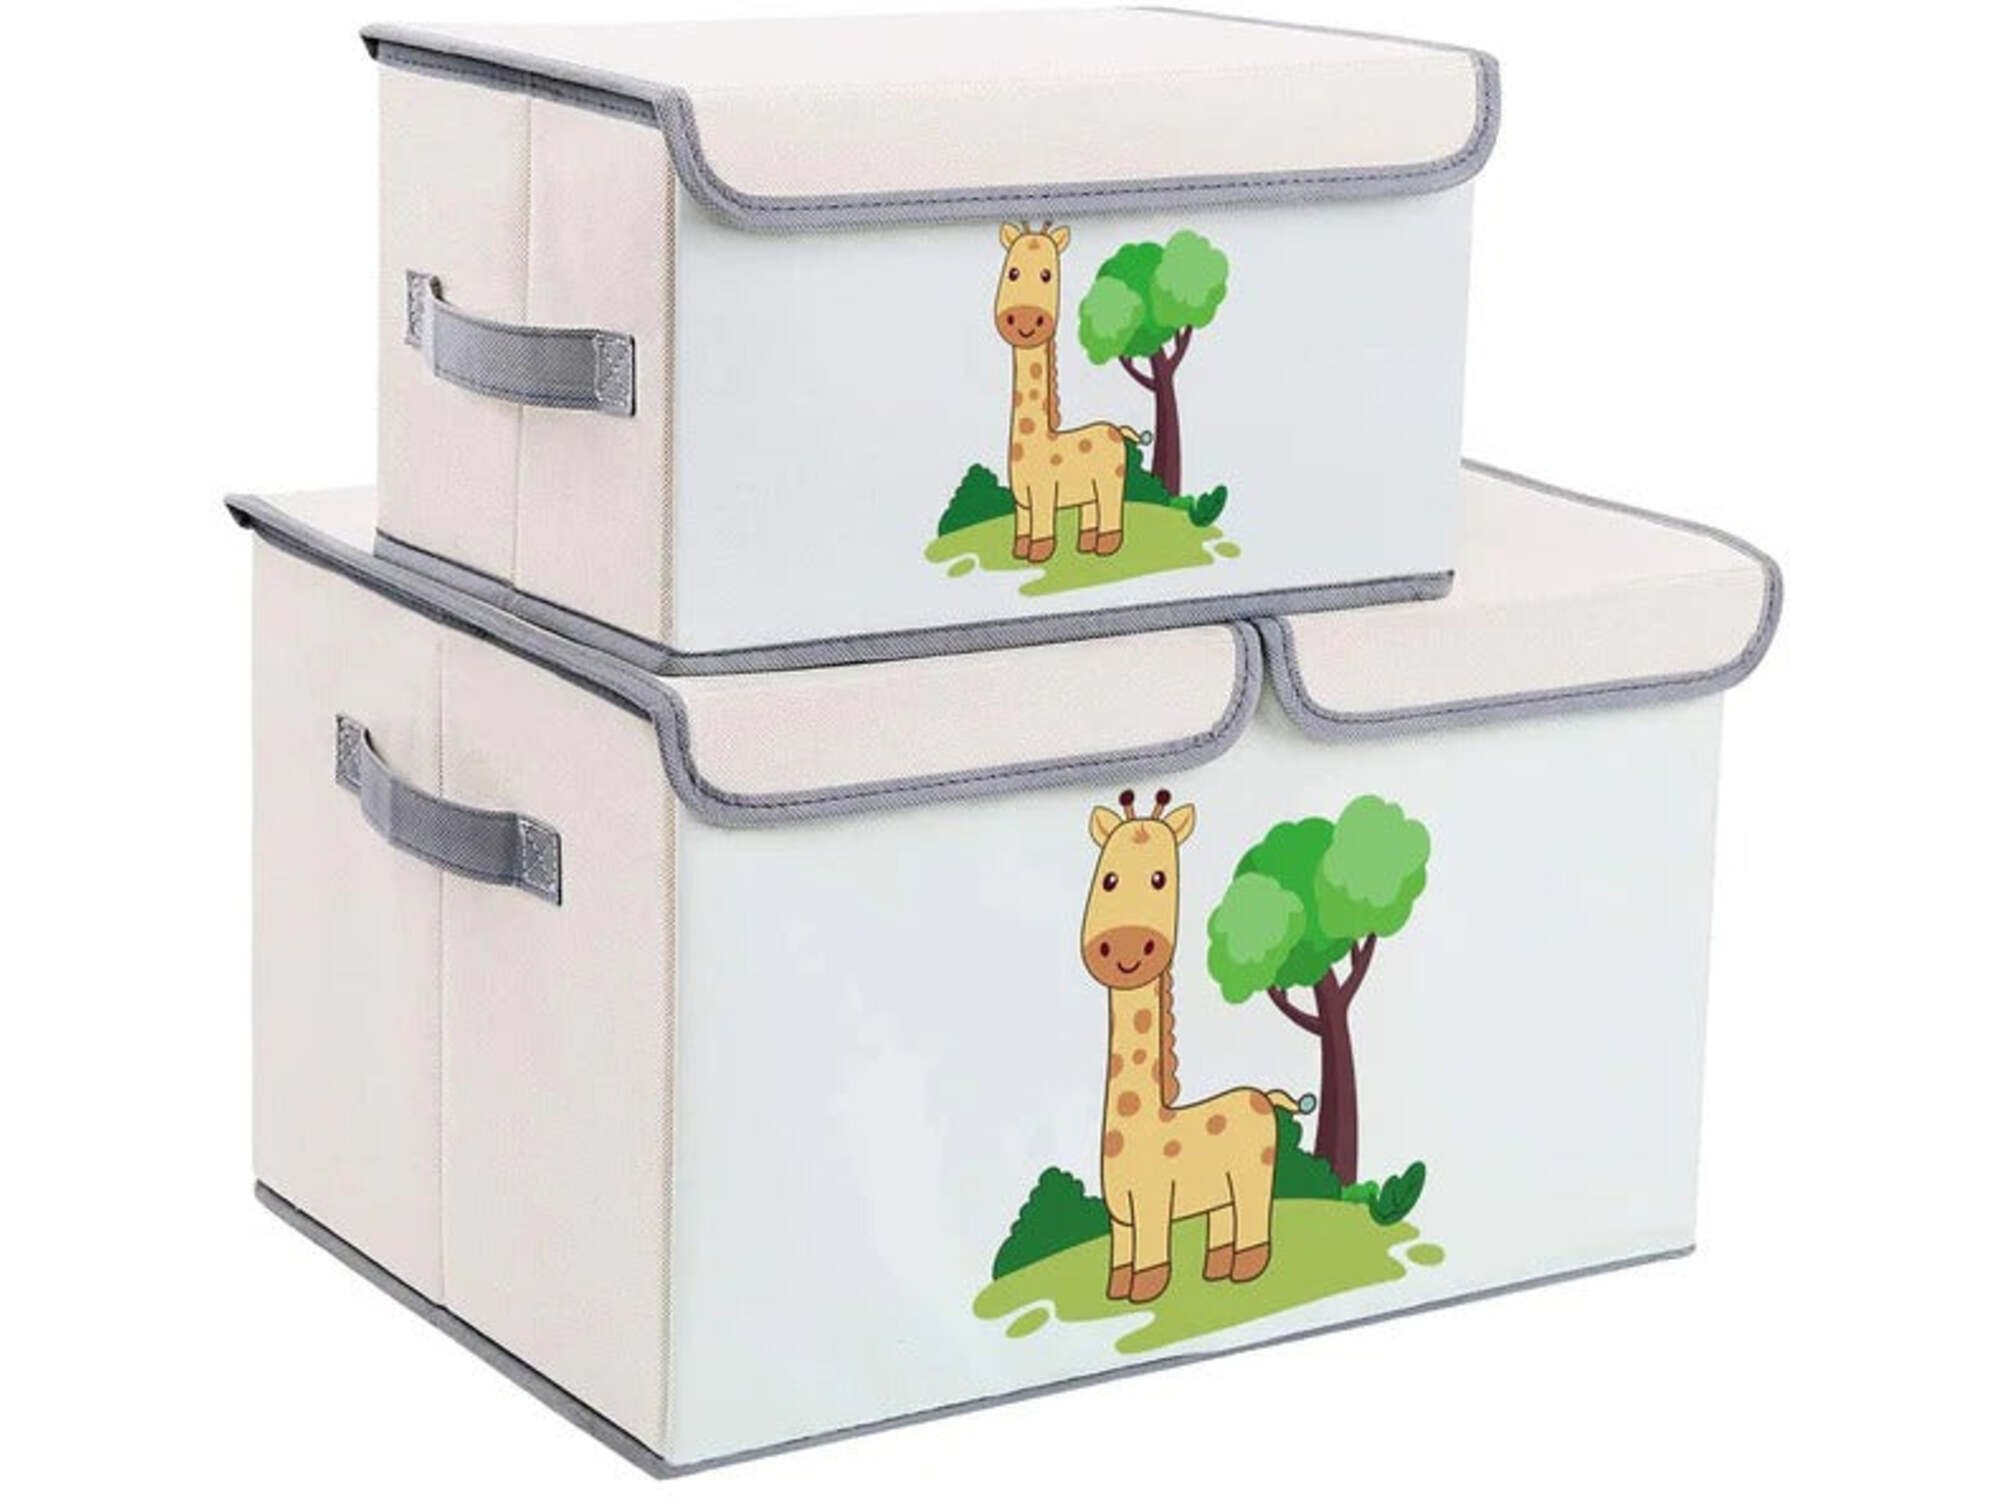 Kinder home Set od 2 preklopne kutije za odlaganje sa poklopcem i ručkama - ŽIRAFE, za dečije igračke, knjige, odeću